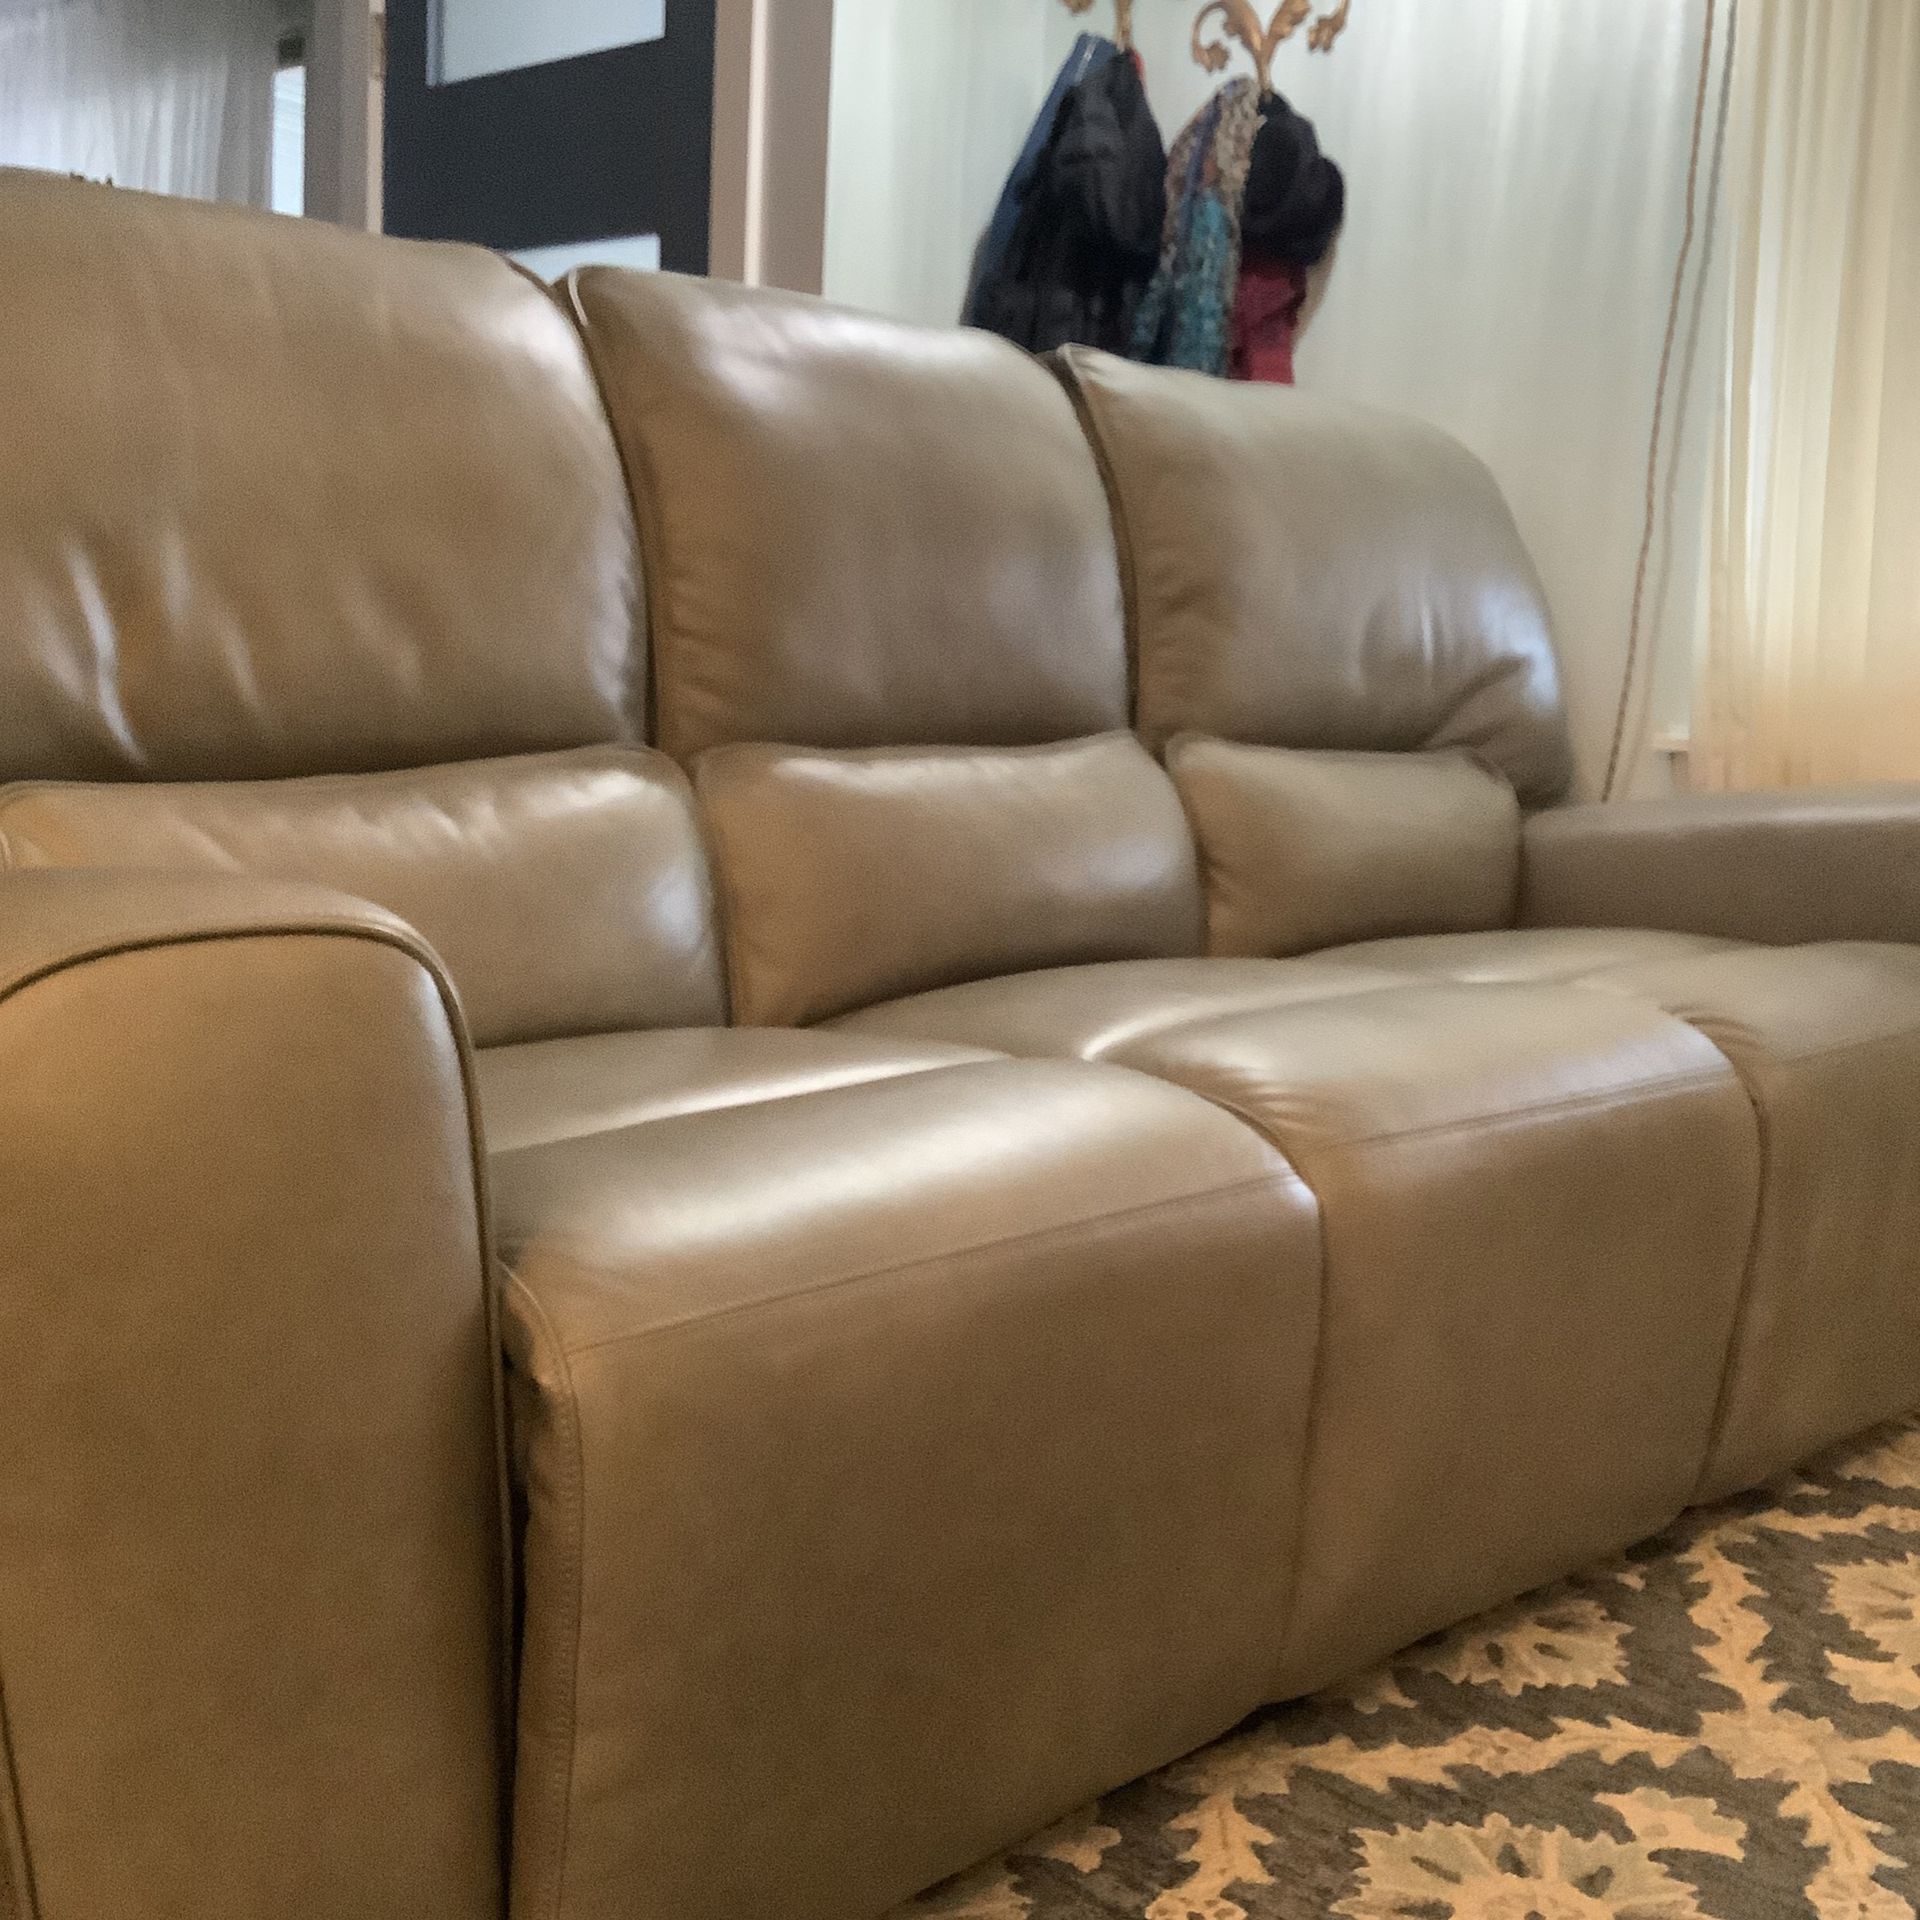  Leather sofa